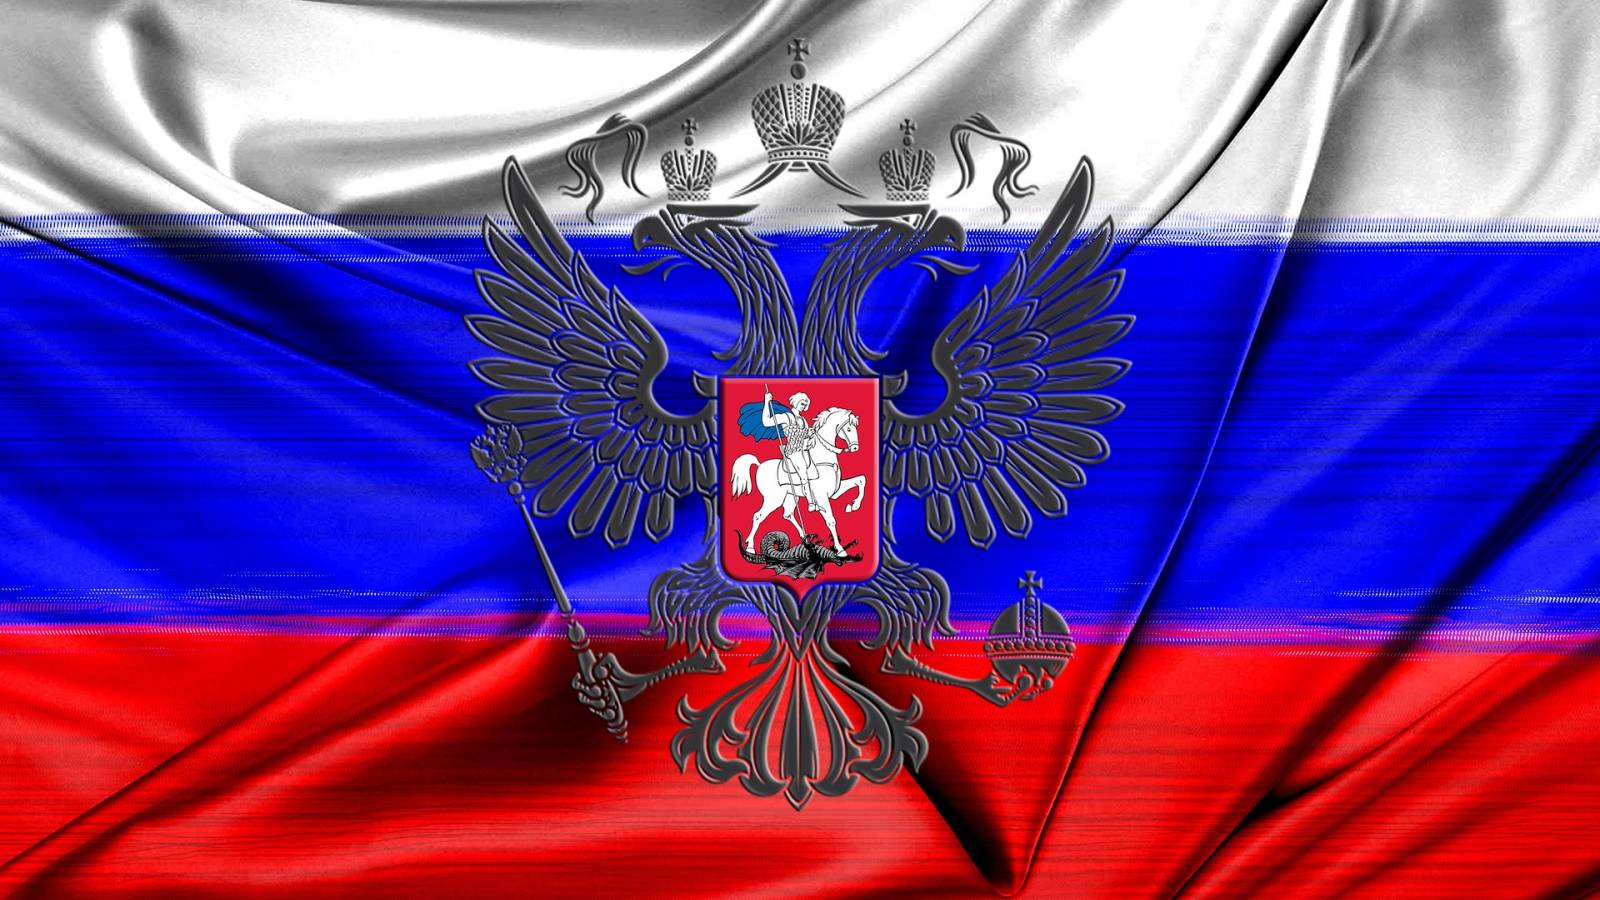 Rusia a Luat o Hotarare CRITICA in Plin RAZBOI cu Ucraina